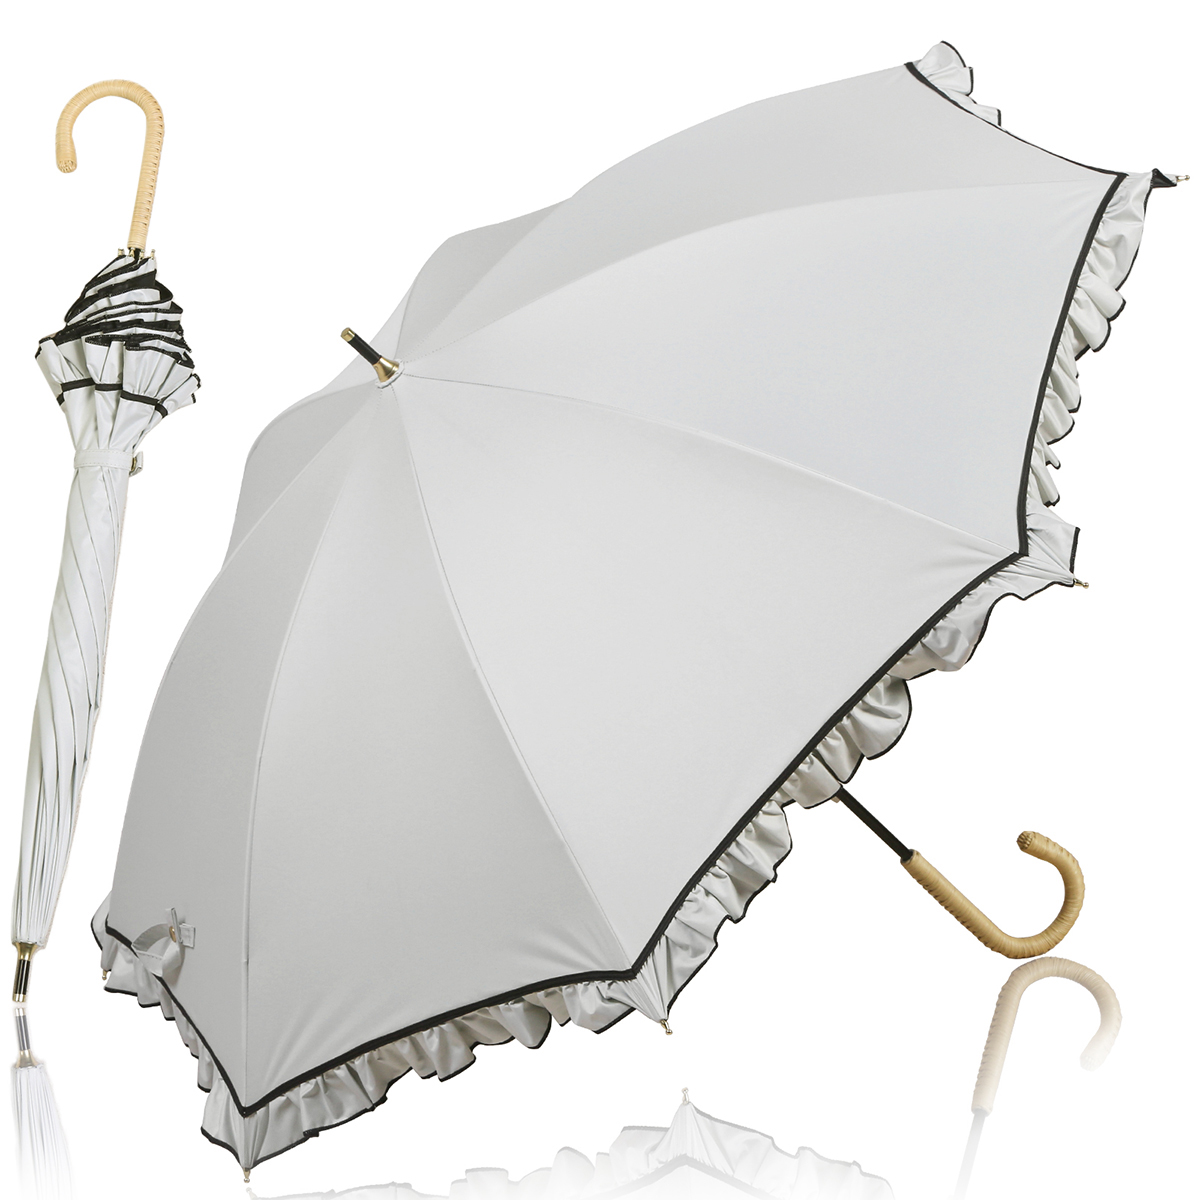 日傘 完全遮光 長傘 UVカット 100%遮光 紫外線対策 軽量 熱中症対策 晴雨兼用 大きい バンブー おしゃれ かわいい 贈り物 プレゼント